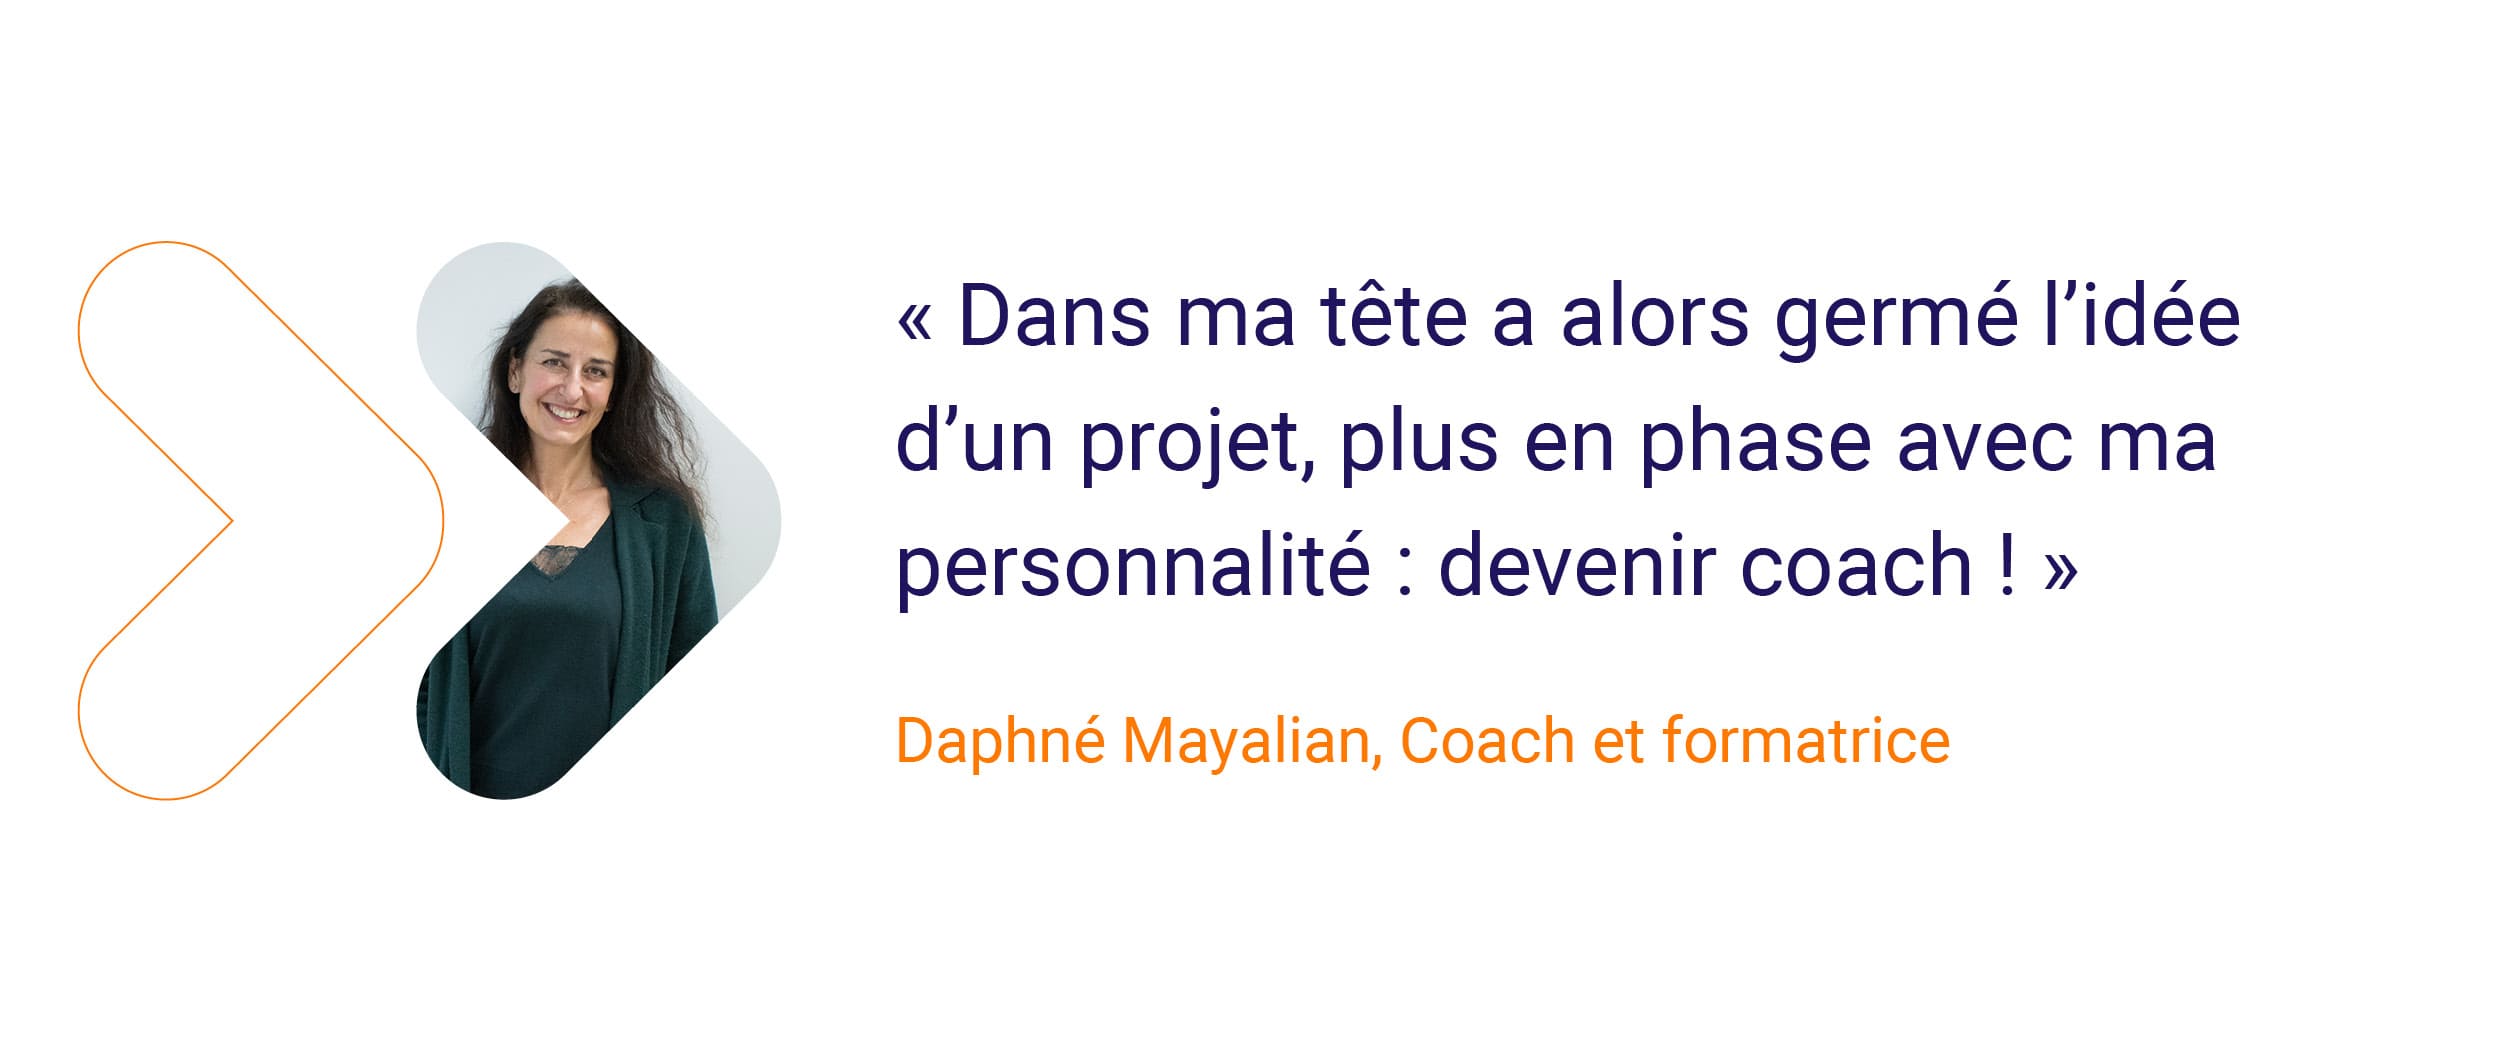 Daphné - « Dans ma tête germe alors l’idée d’un projet, 
plus en phase avec ma personnalité : devenir coach ! »